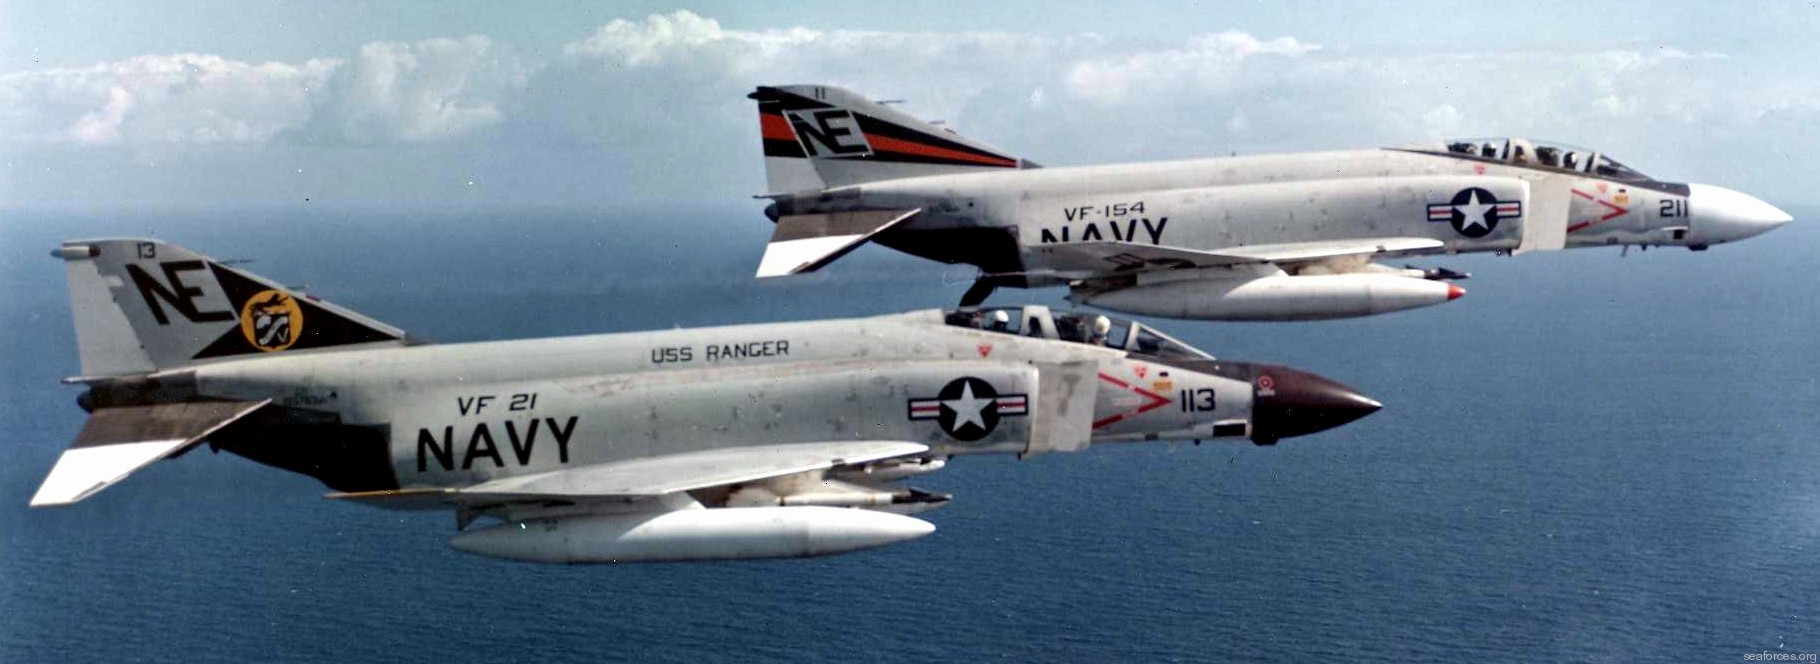 vf-154 black knights fighter squadron us navy f-4j phantom ii carrier air wing cvw-2 19 uss ranger cv-61